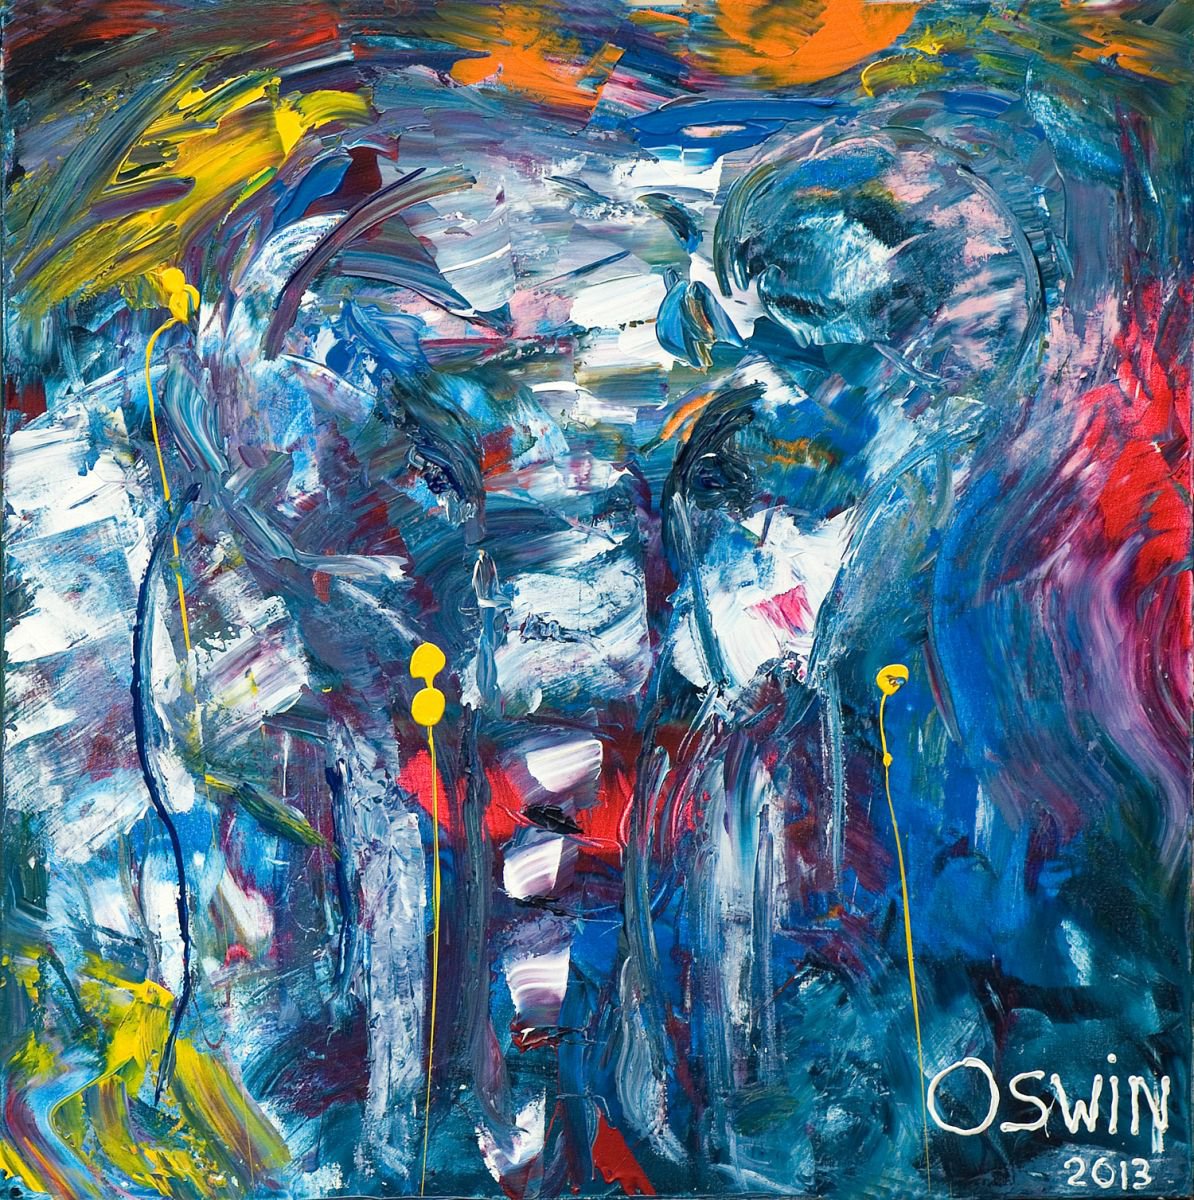 Animals/ Wild life elephant: Late night elephant 80 x 80 cm by Oswin Gesselli by Oswin Gesselli